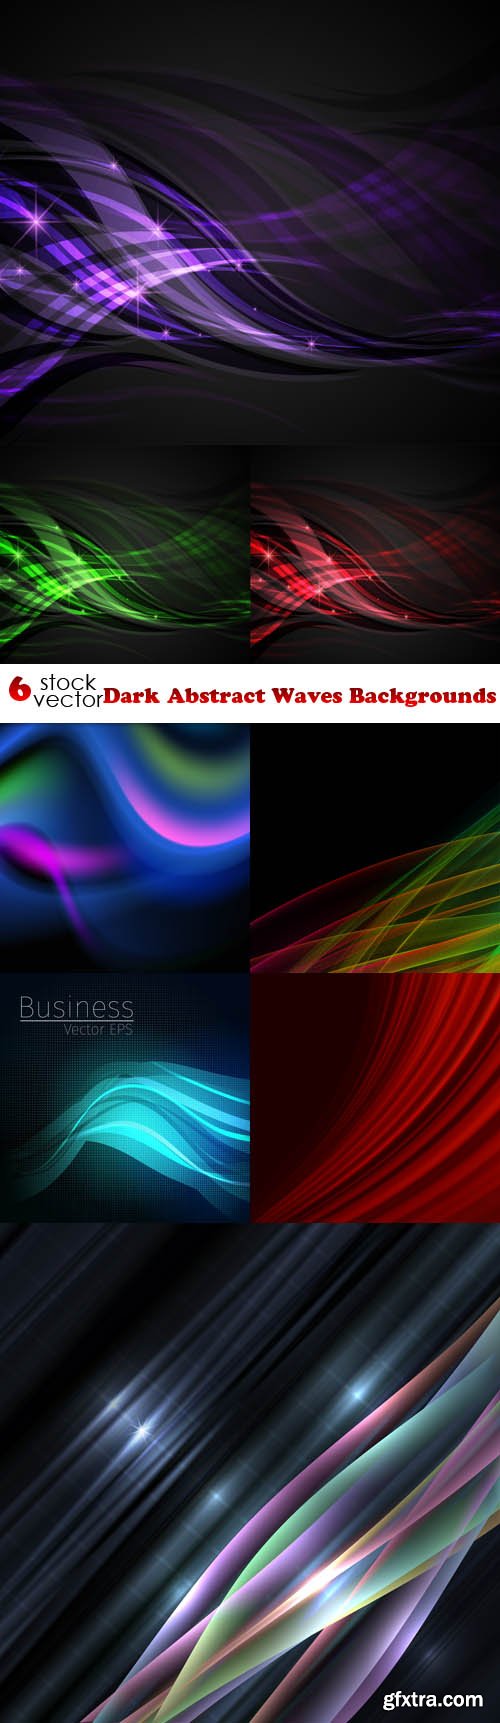 Vectors - Dark Abstract Waves Backgrounds